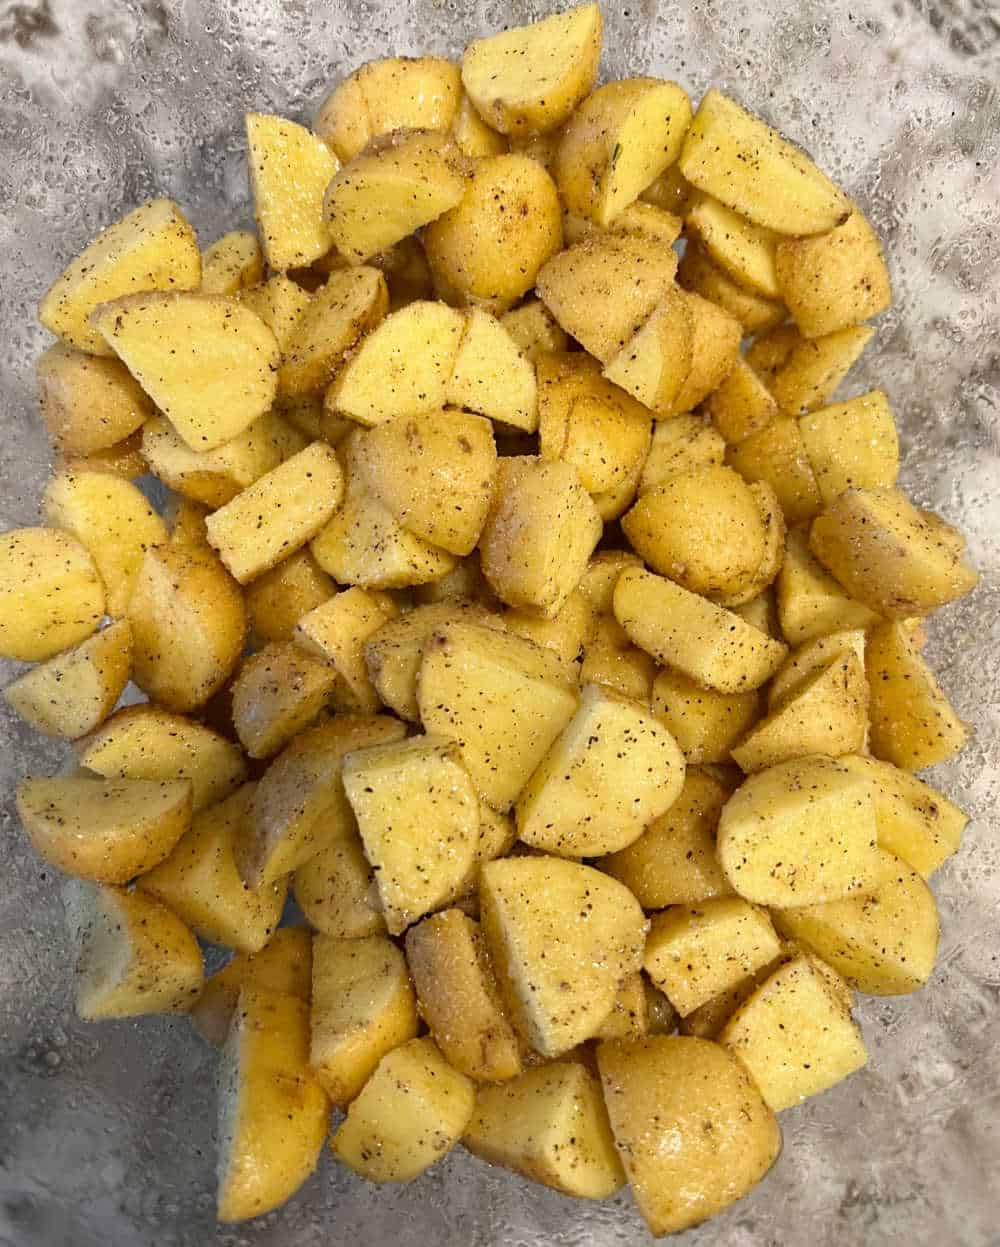 seasoned potatoes in mixing bowl.